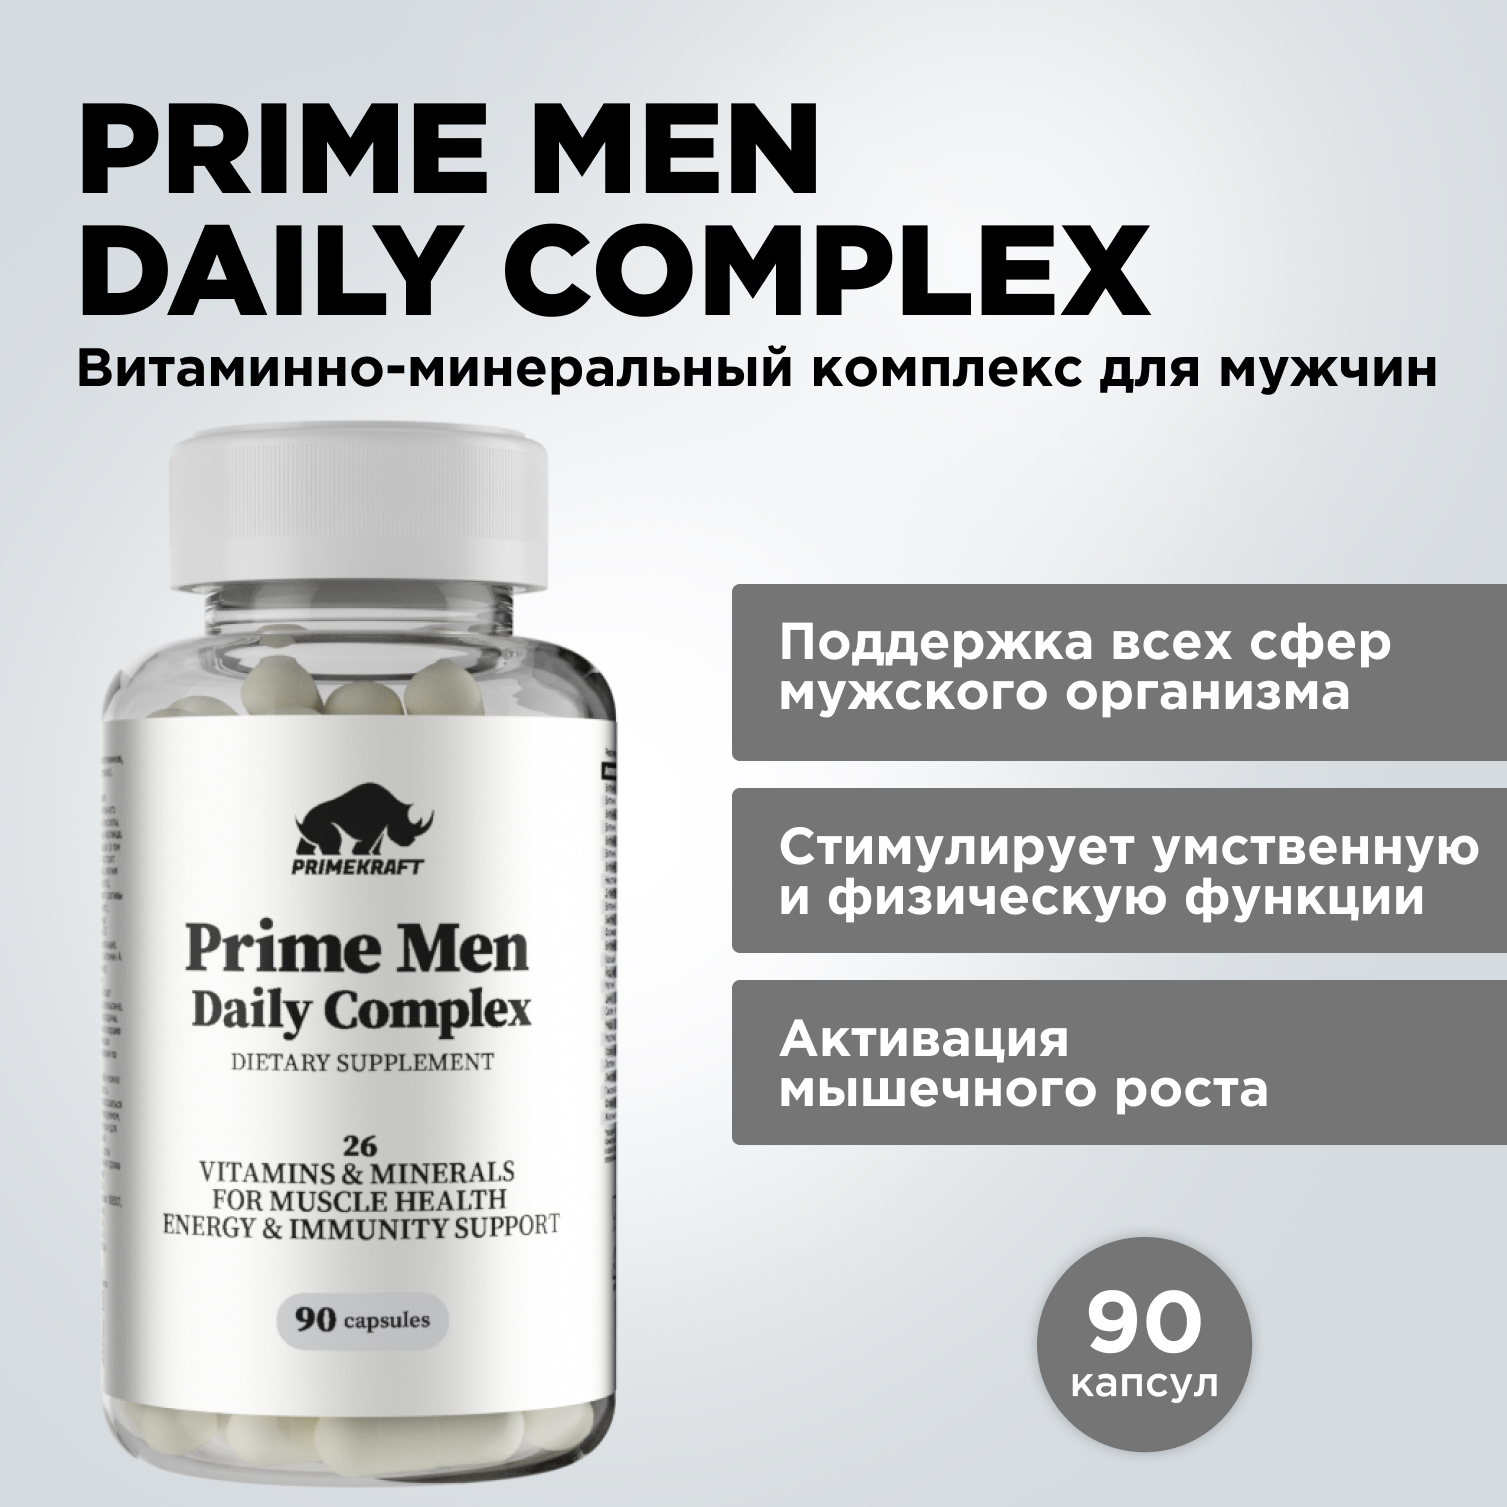 ЯБ041561, Витаминно-минеральный комплекс Prime Kraft Prime Men Daily Complex для мужчин, 90 капсул  - купить